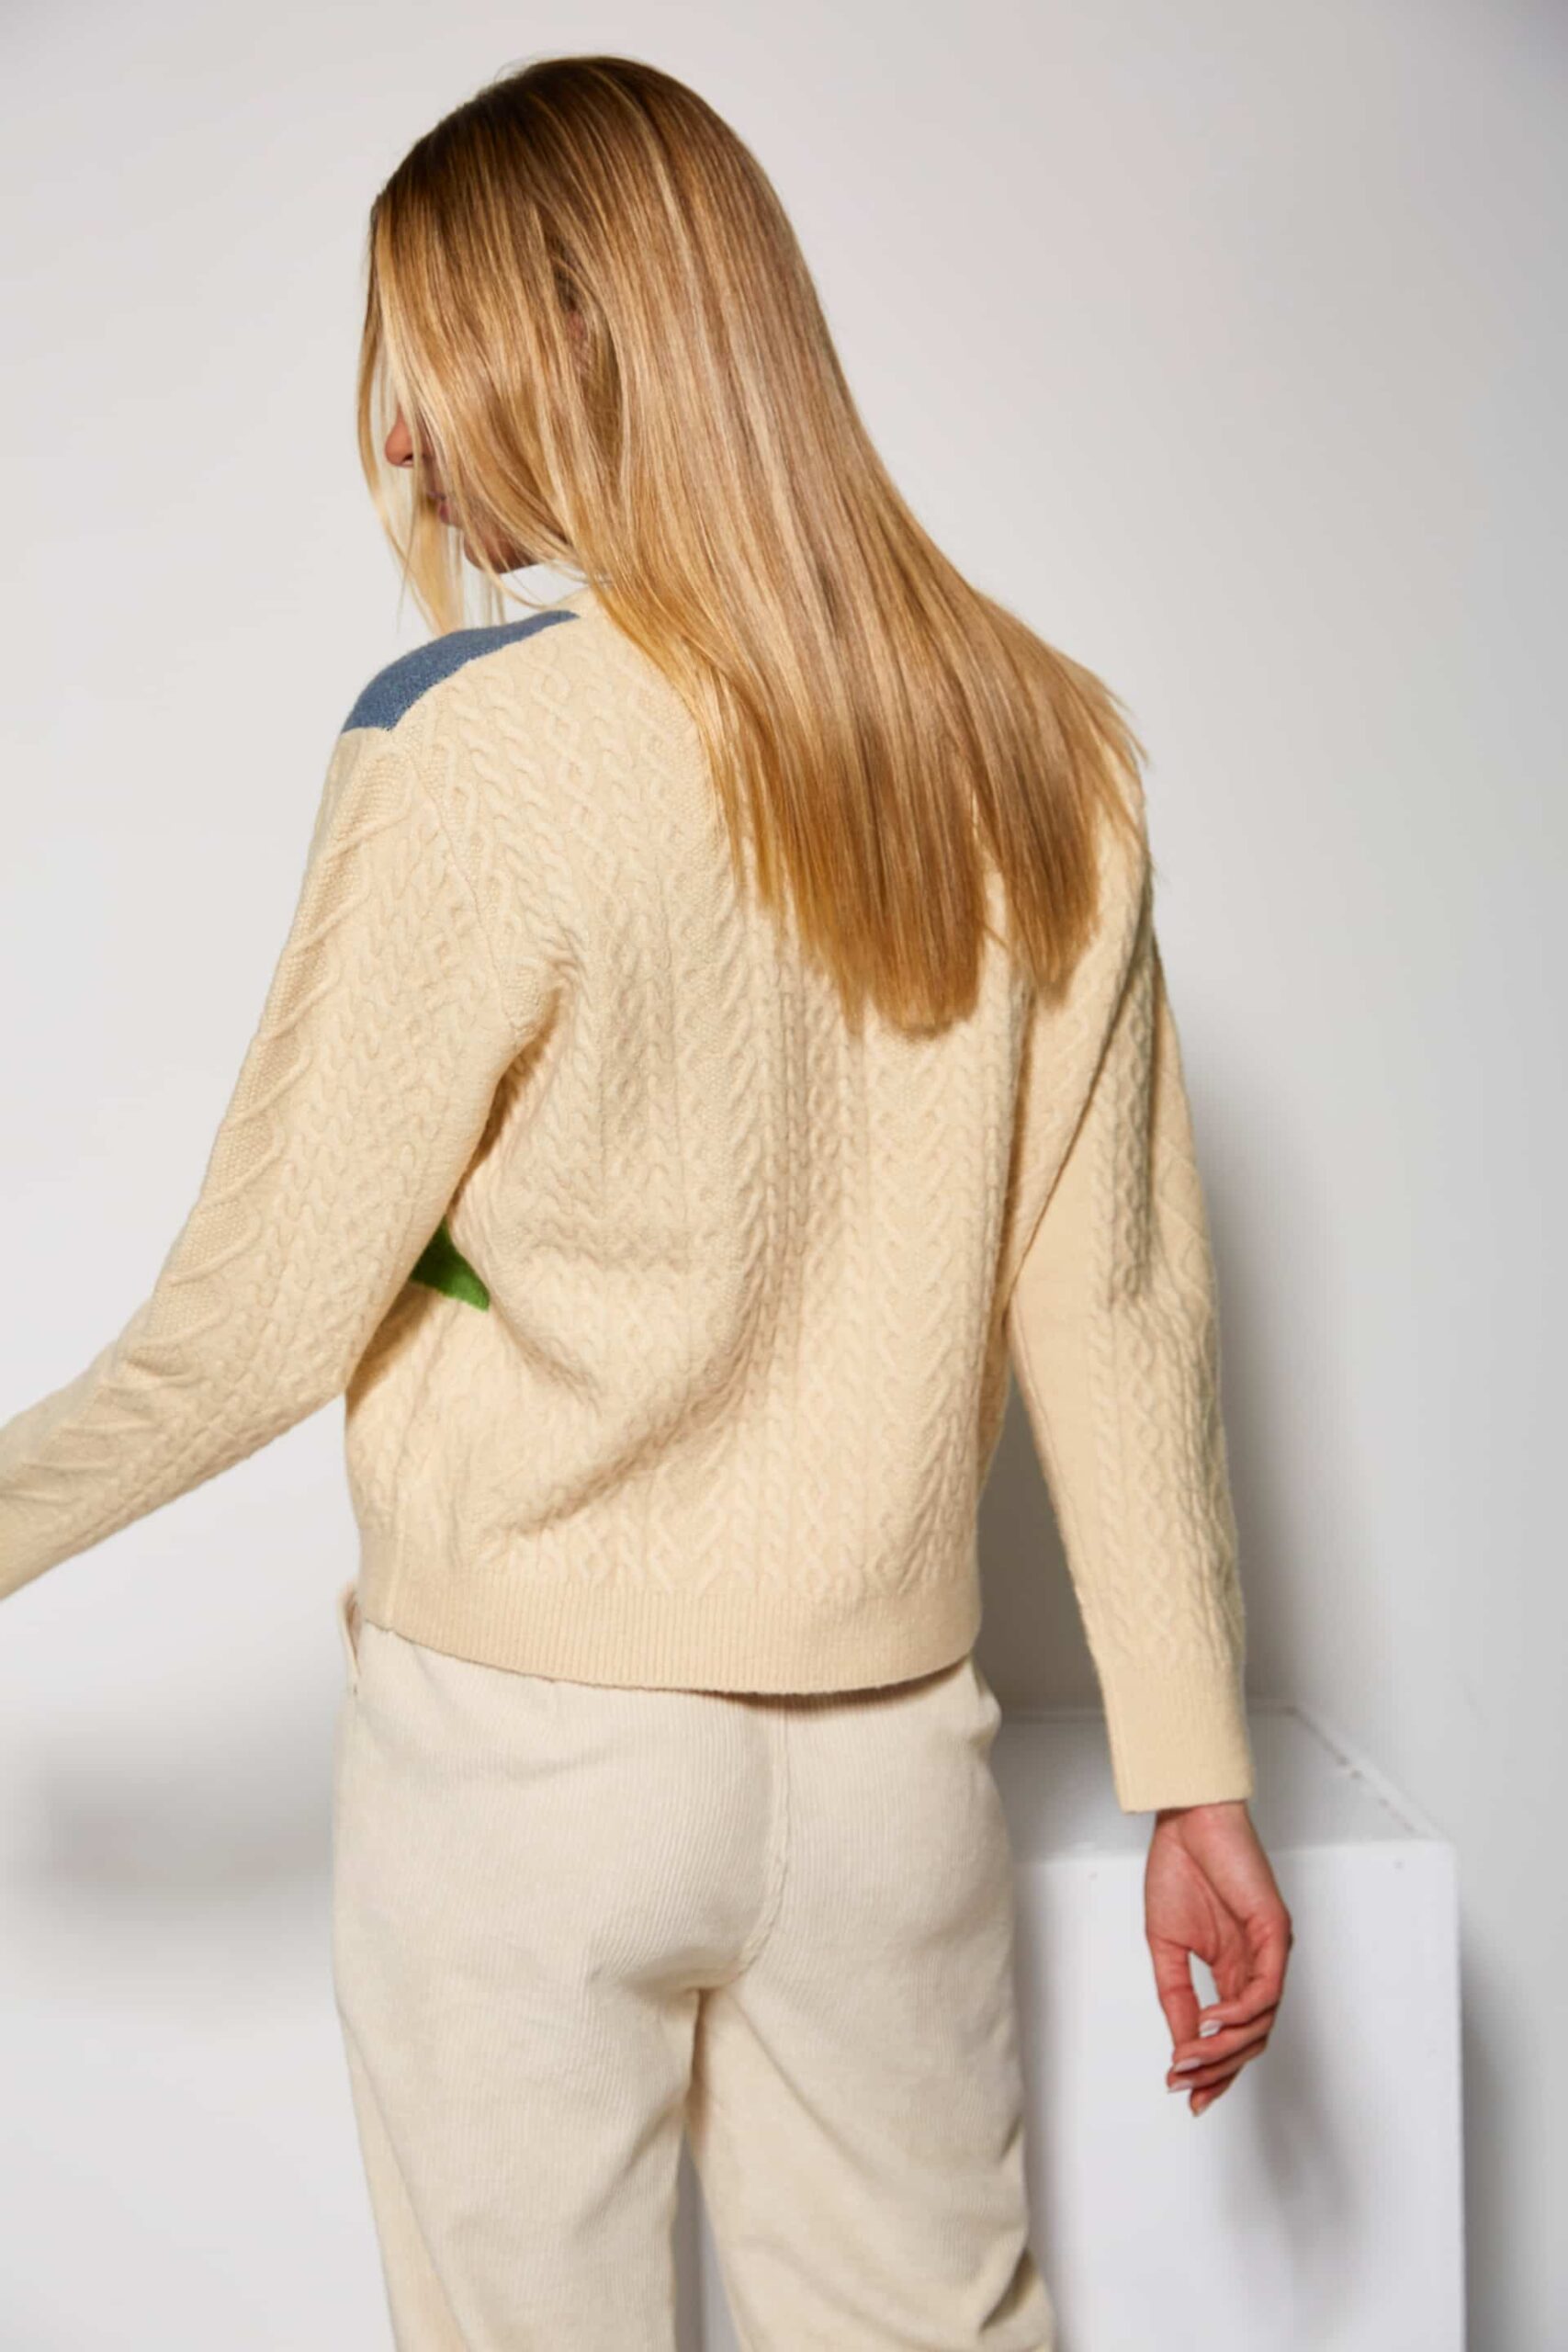 Llama print sweater